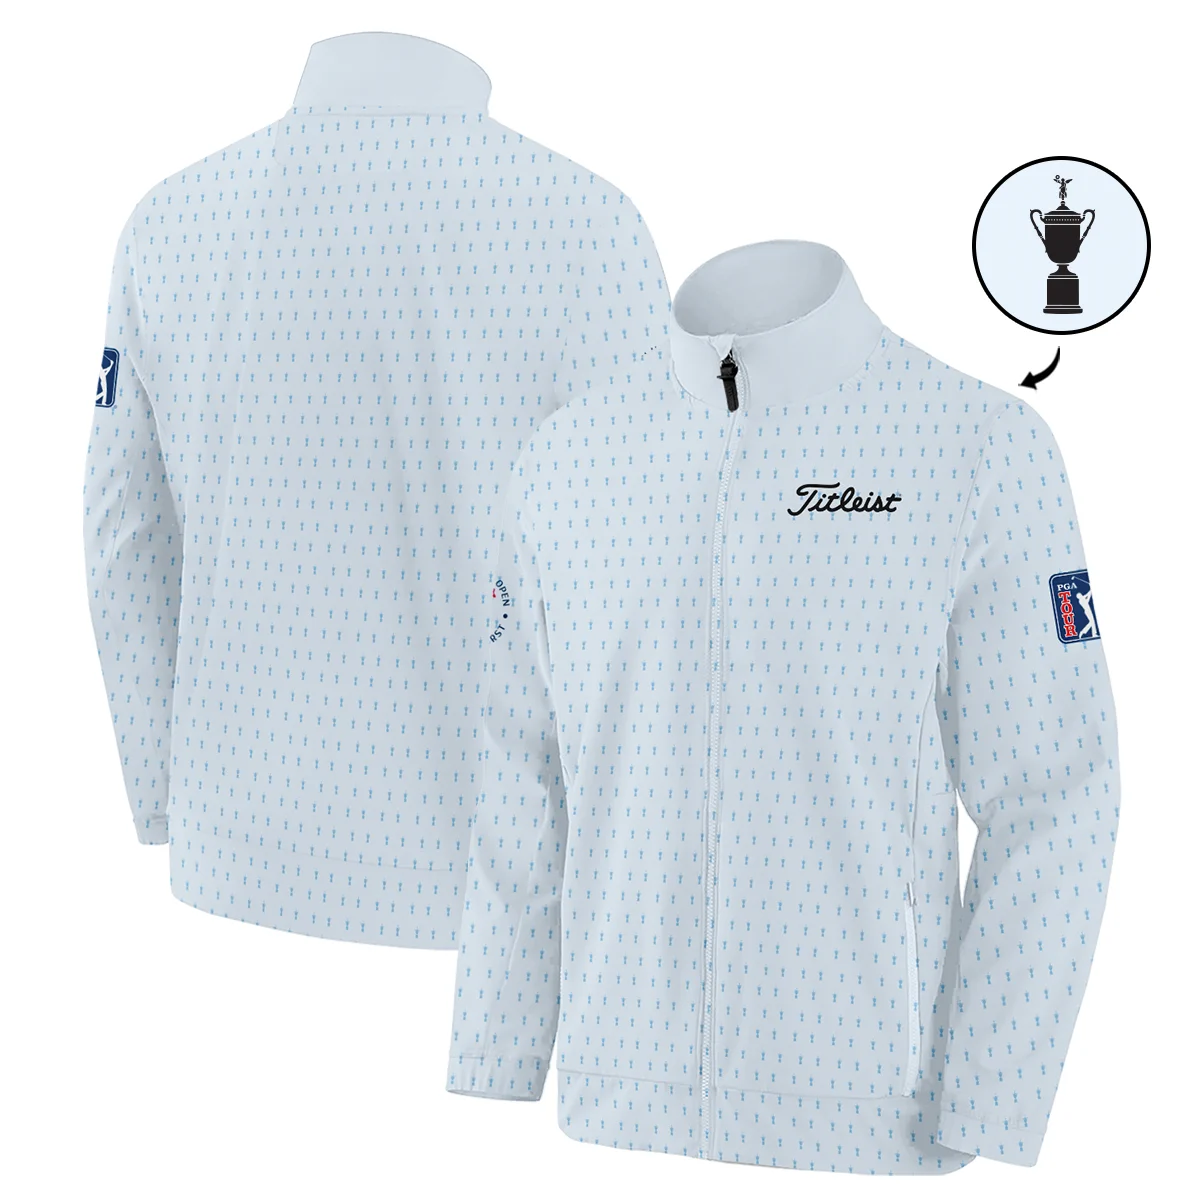 124th U.S. Open Pinehurst Titleist Zipper Hoodie Shirt Sports Pattern Cup Color Light Blue All Over Print Zipper Hoodie Shirt